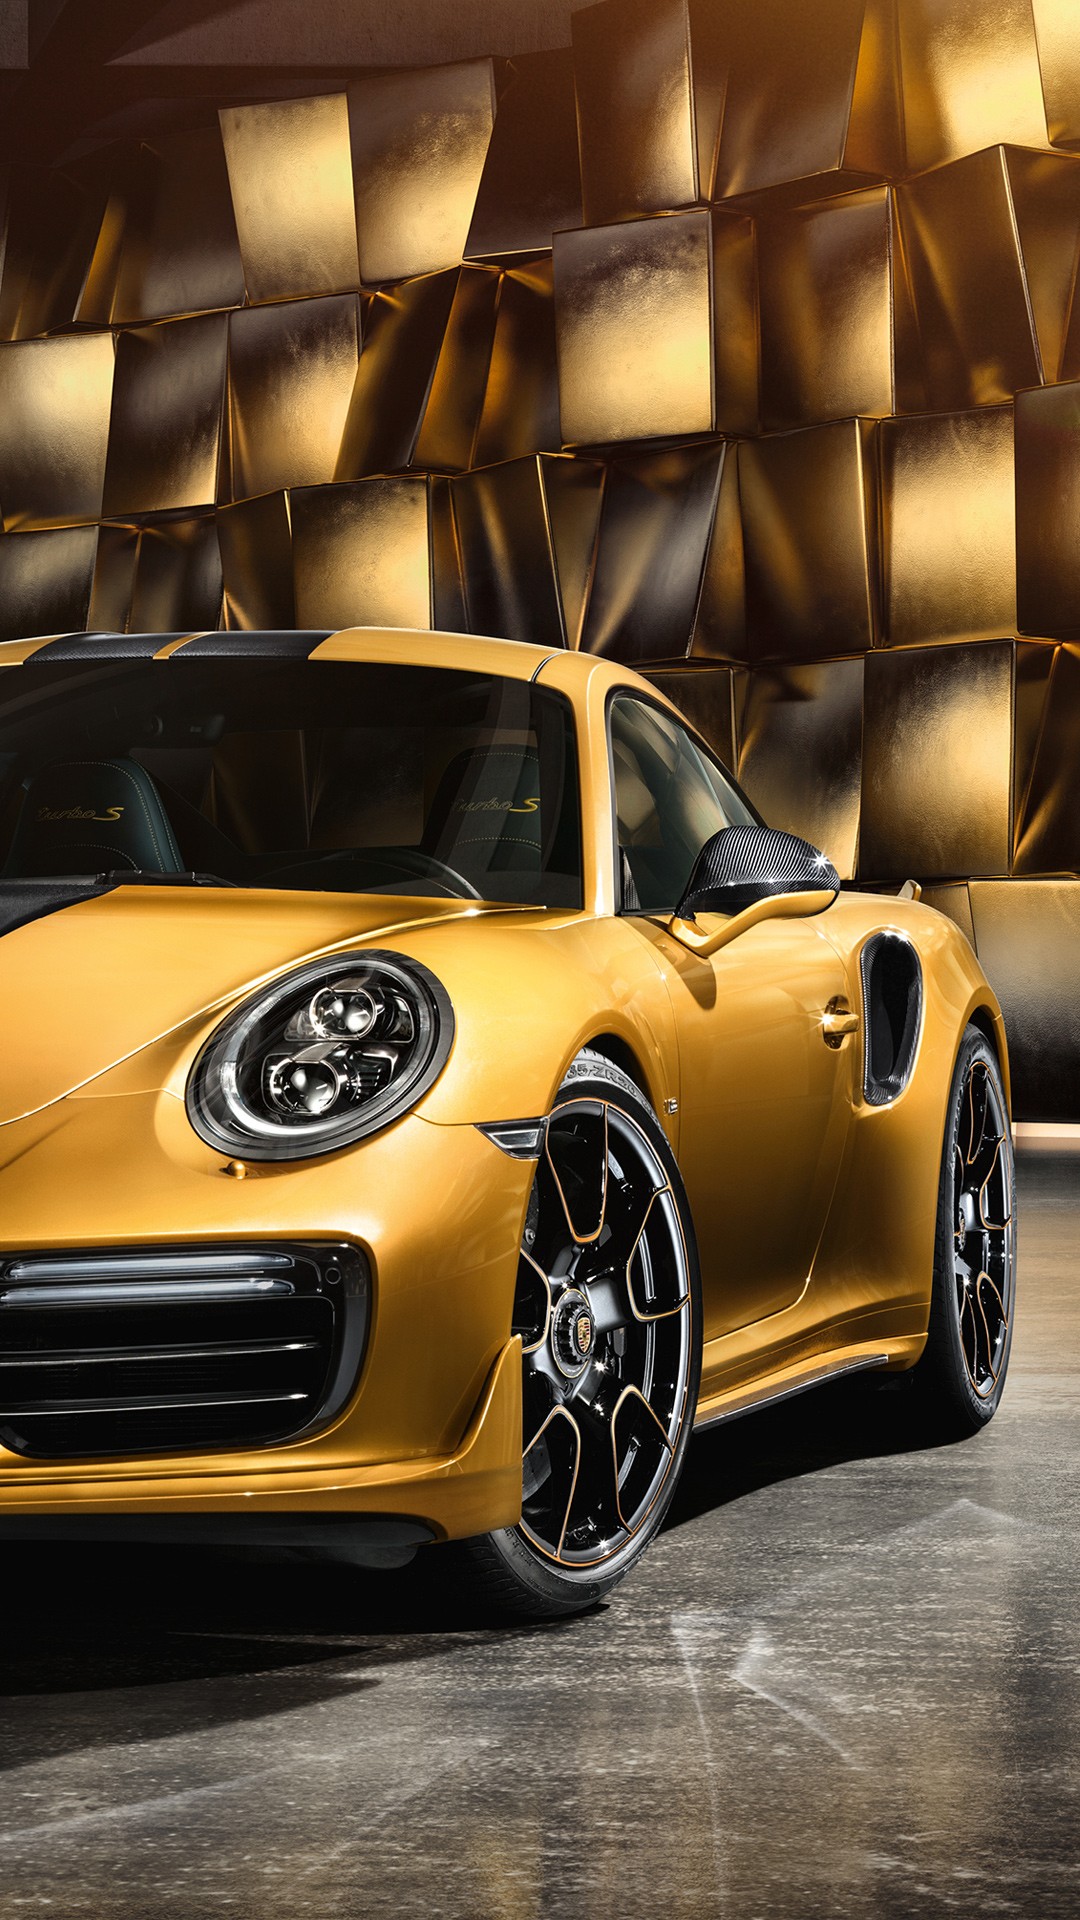 Gold Porsche 911 Turbo - HD Wallpaper 